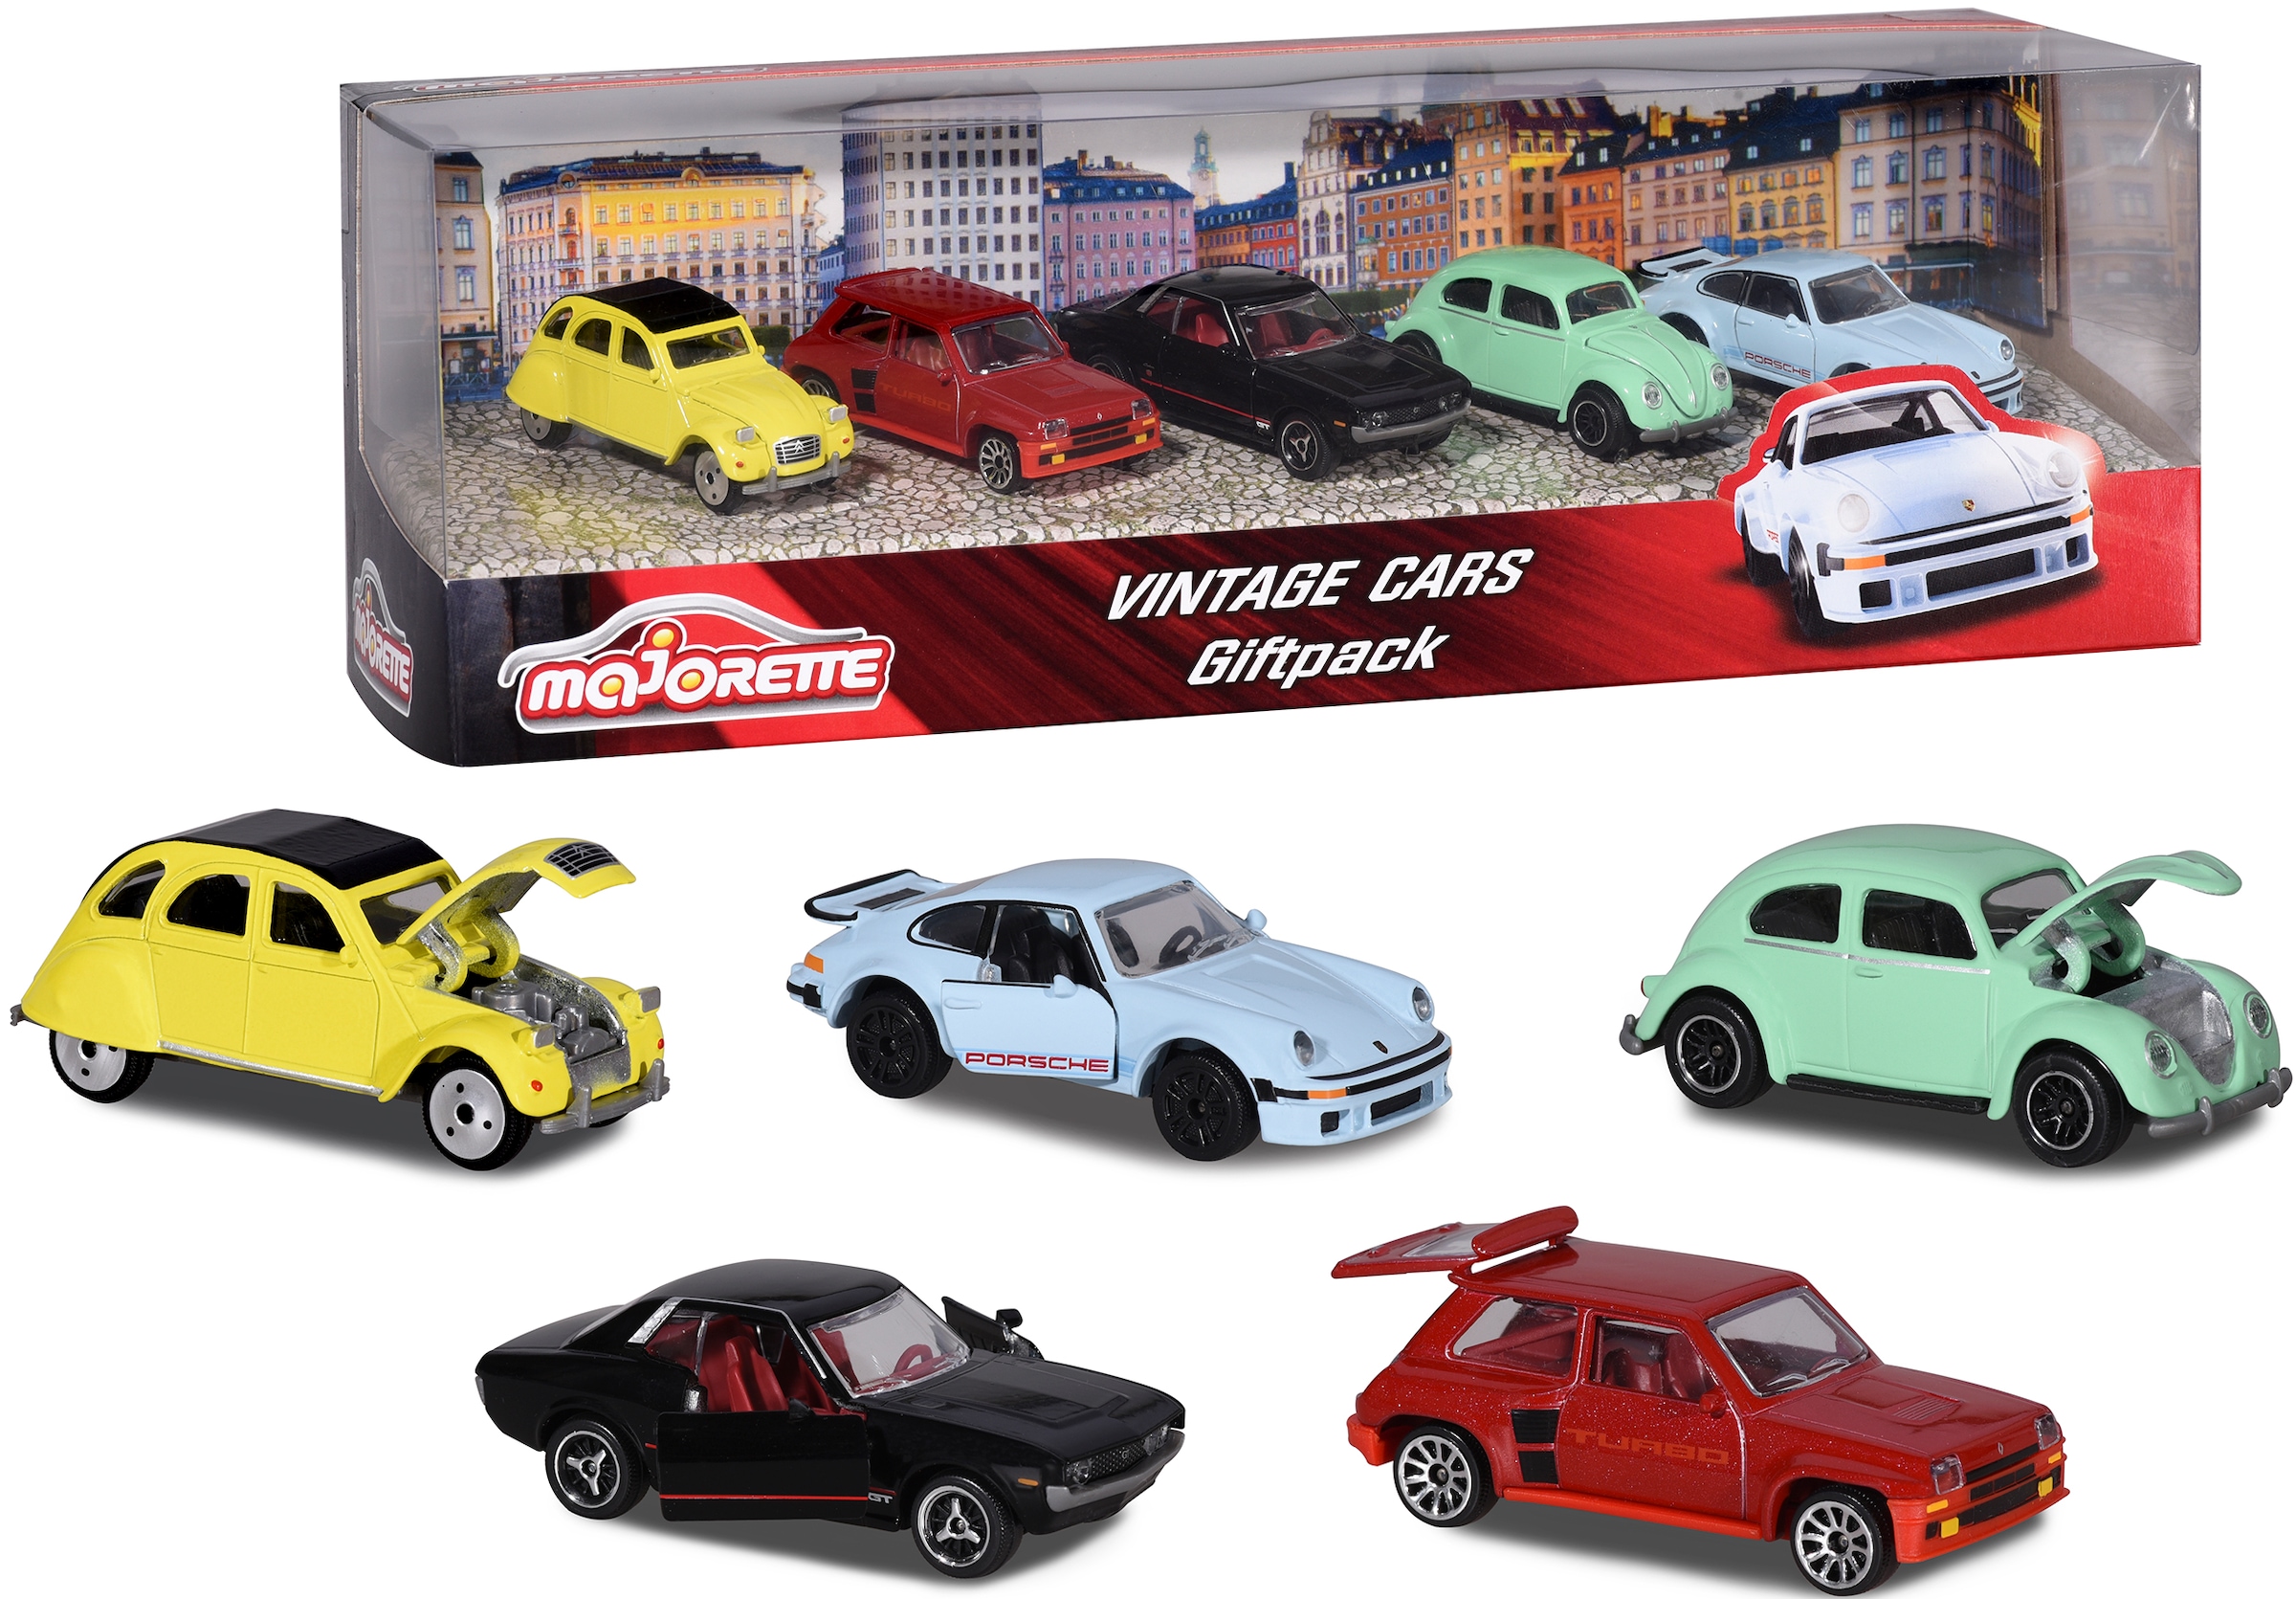 majORETTE Spielzeug-Auto »Vintage«, (Set, 5 tlg.)